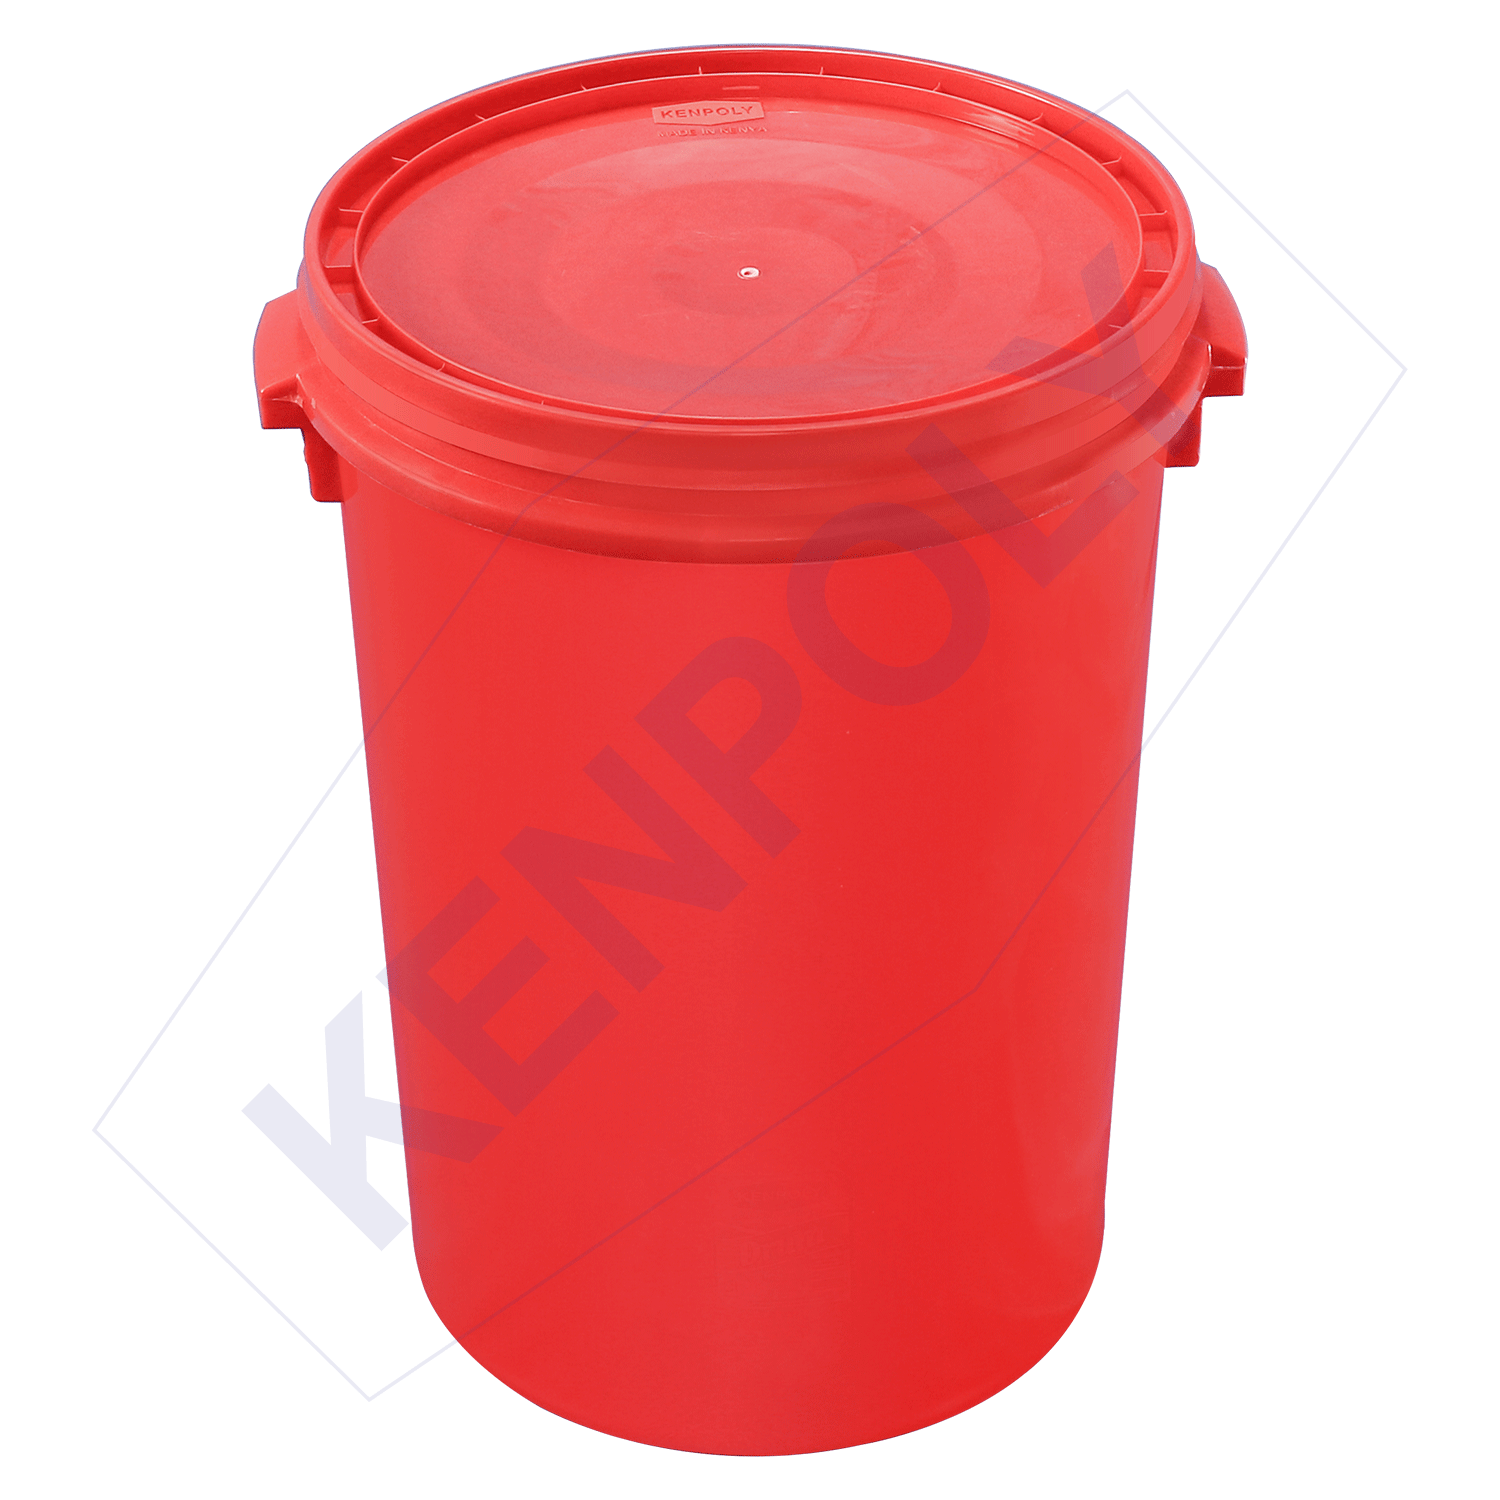 Kenpoly water drum H607 x Dia480 mm Capacity 68 Ltrs